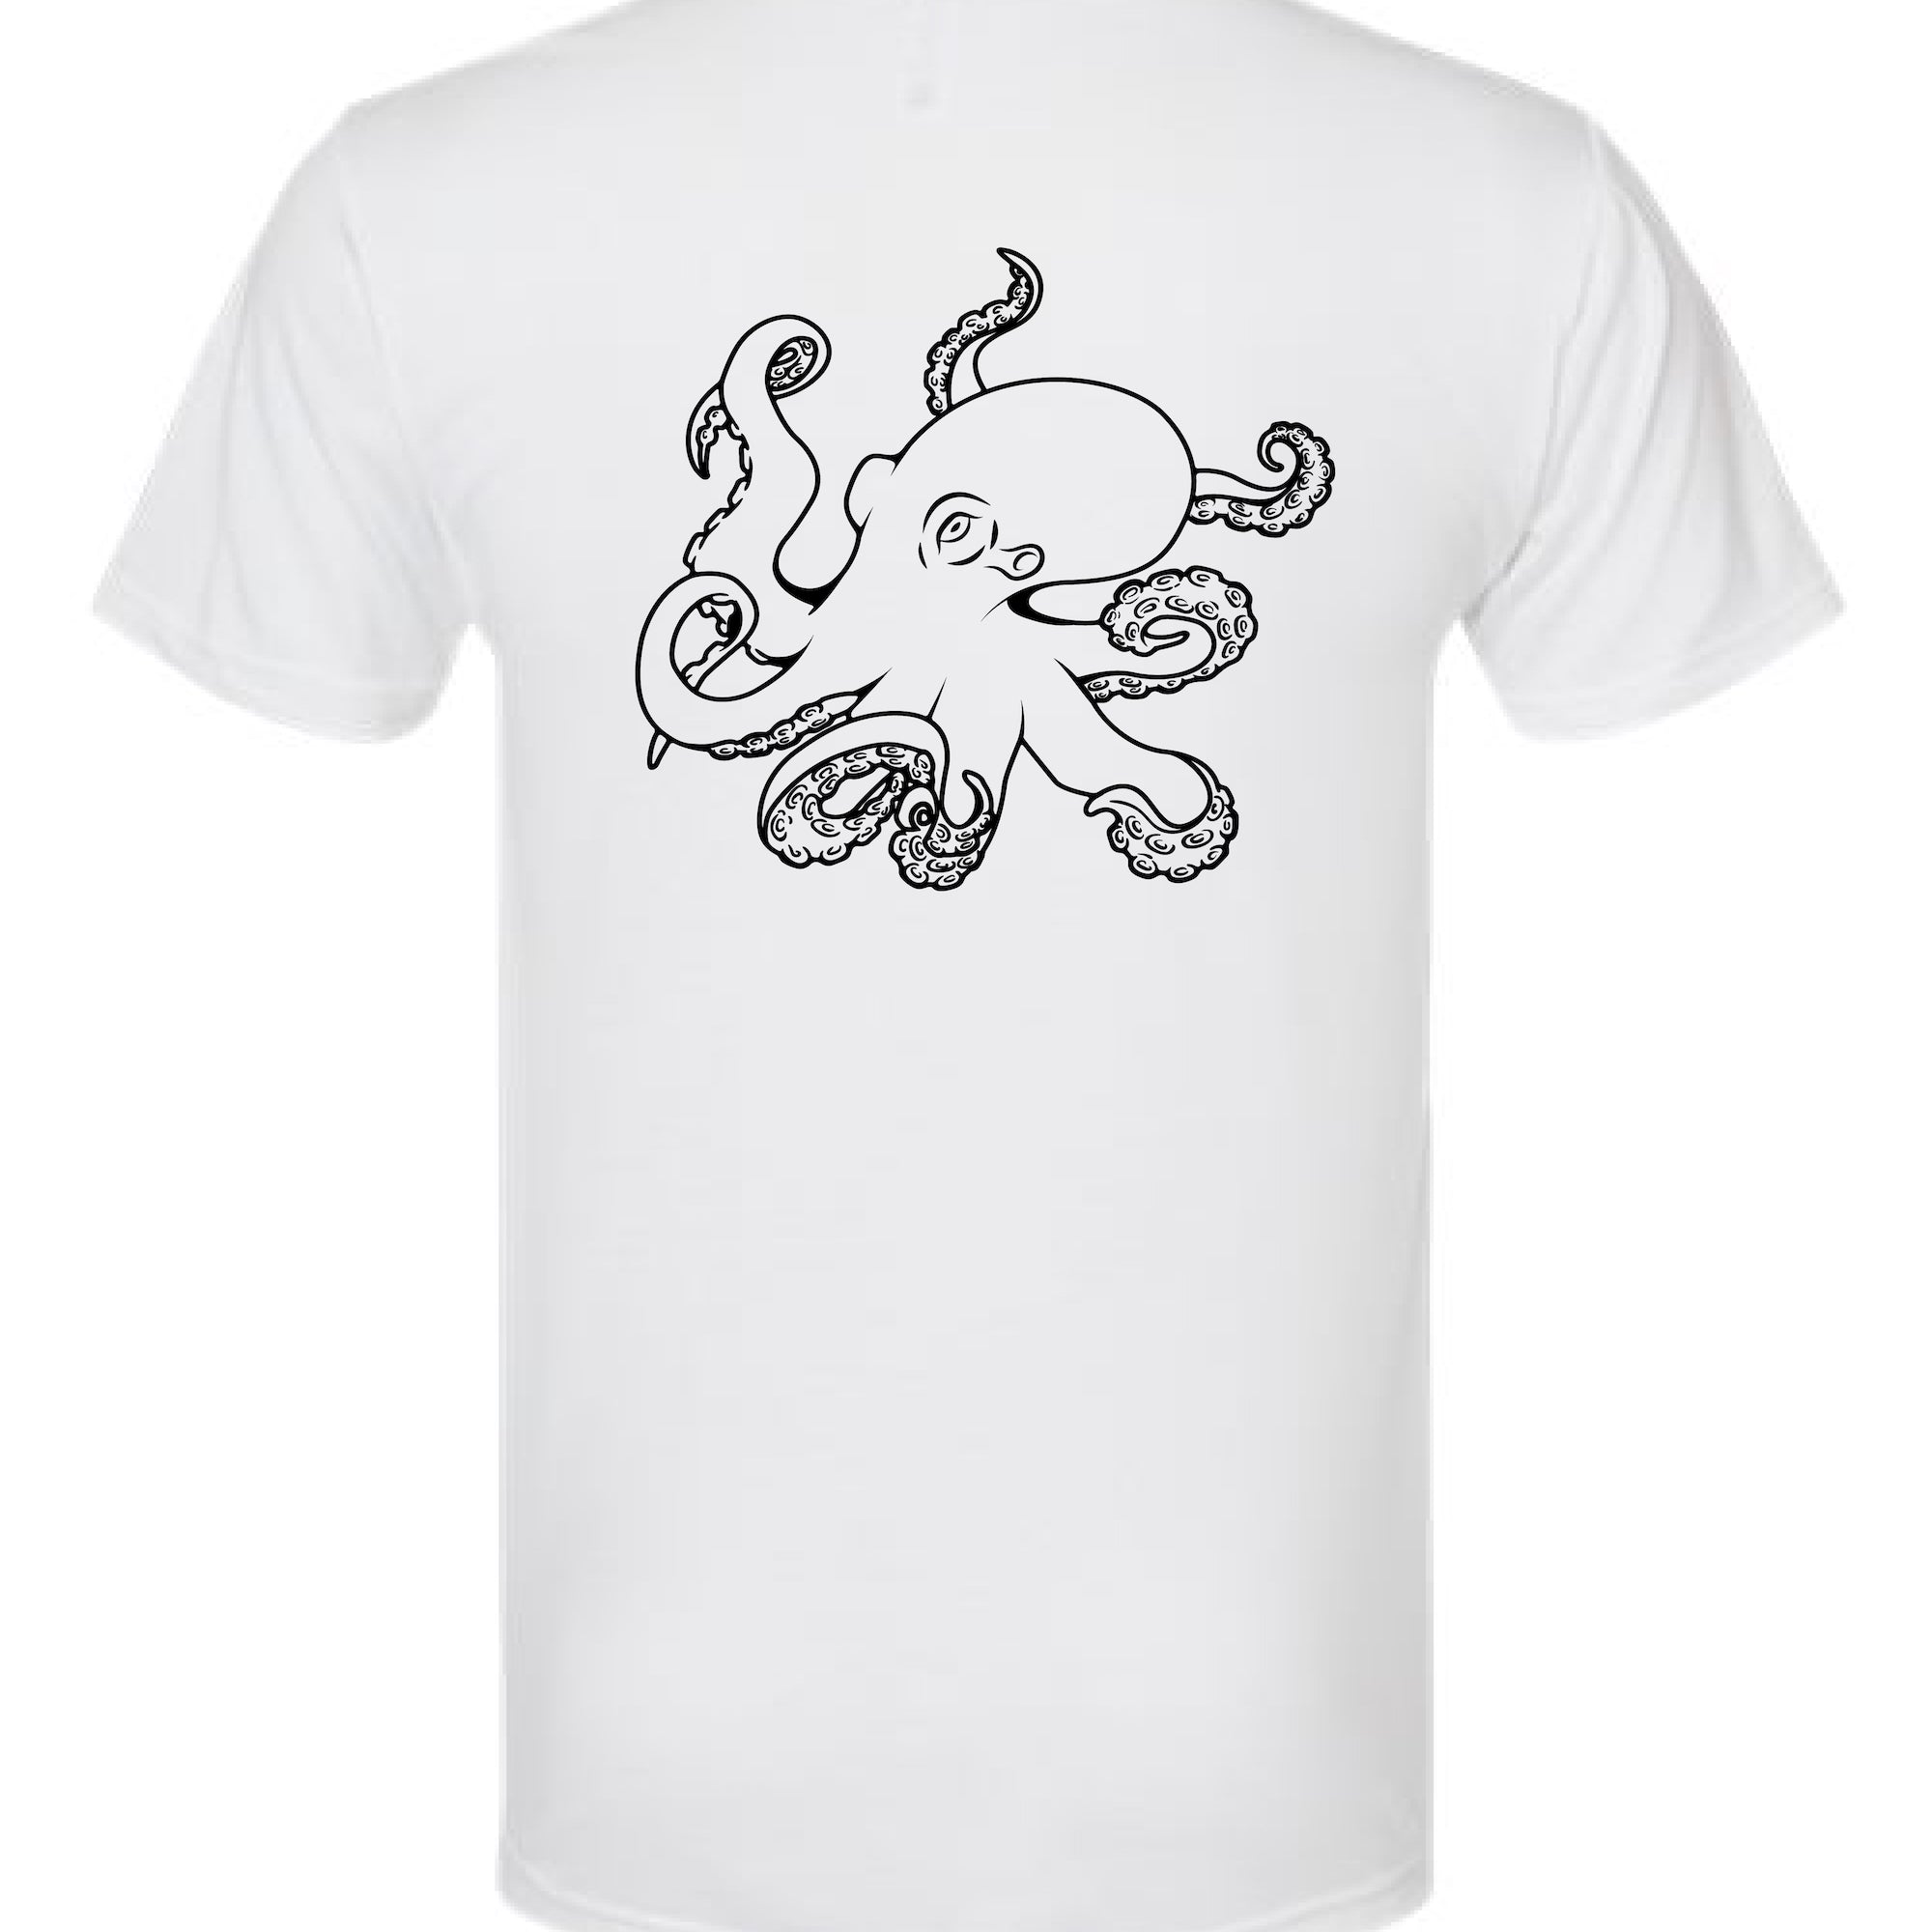 Octopus Tee